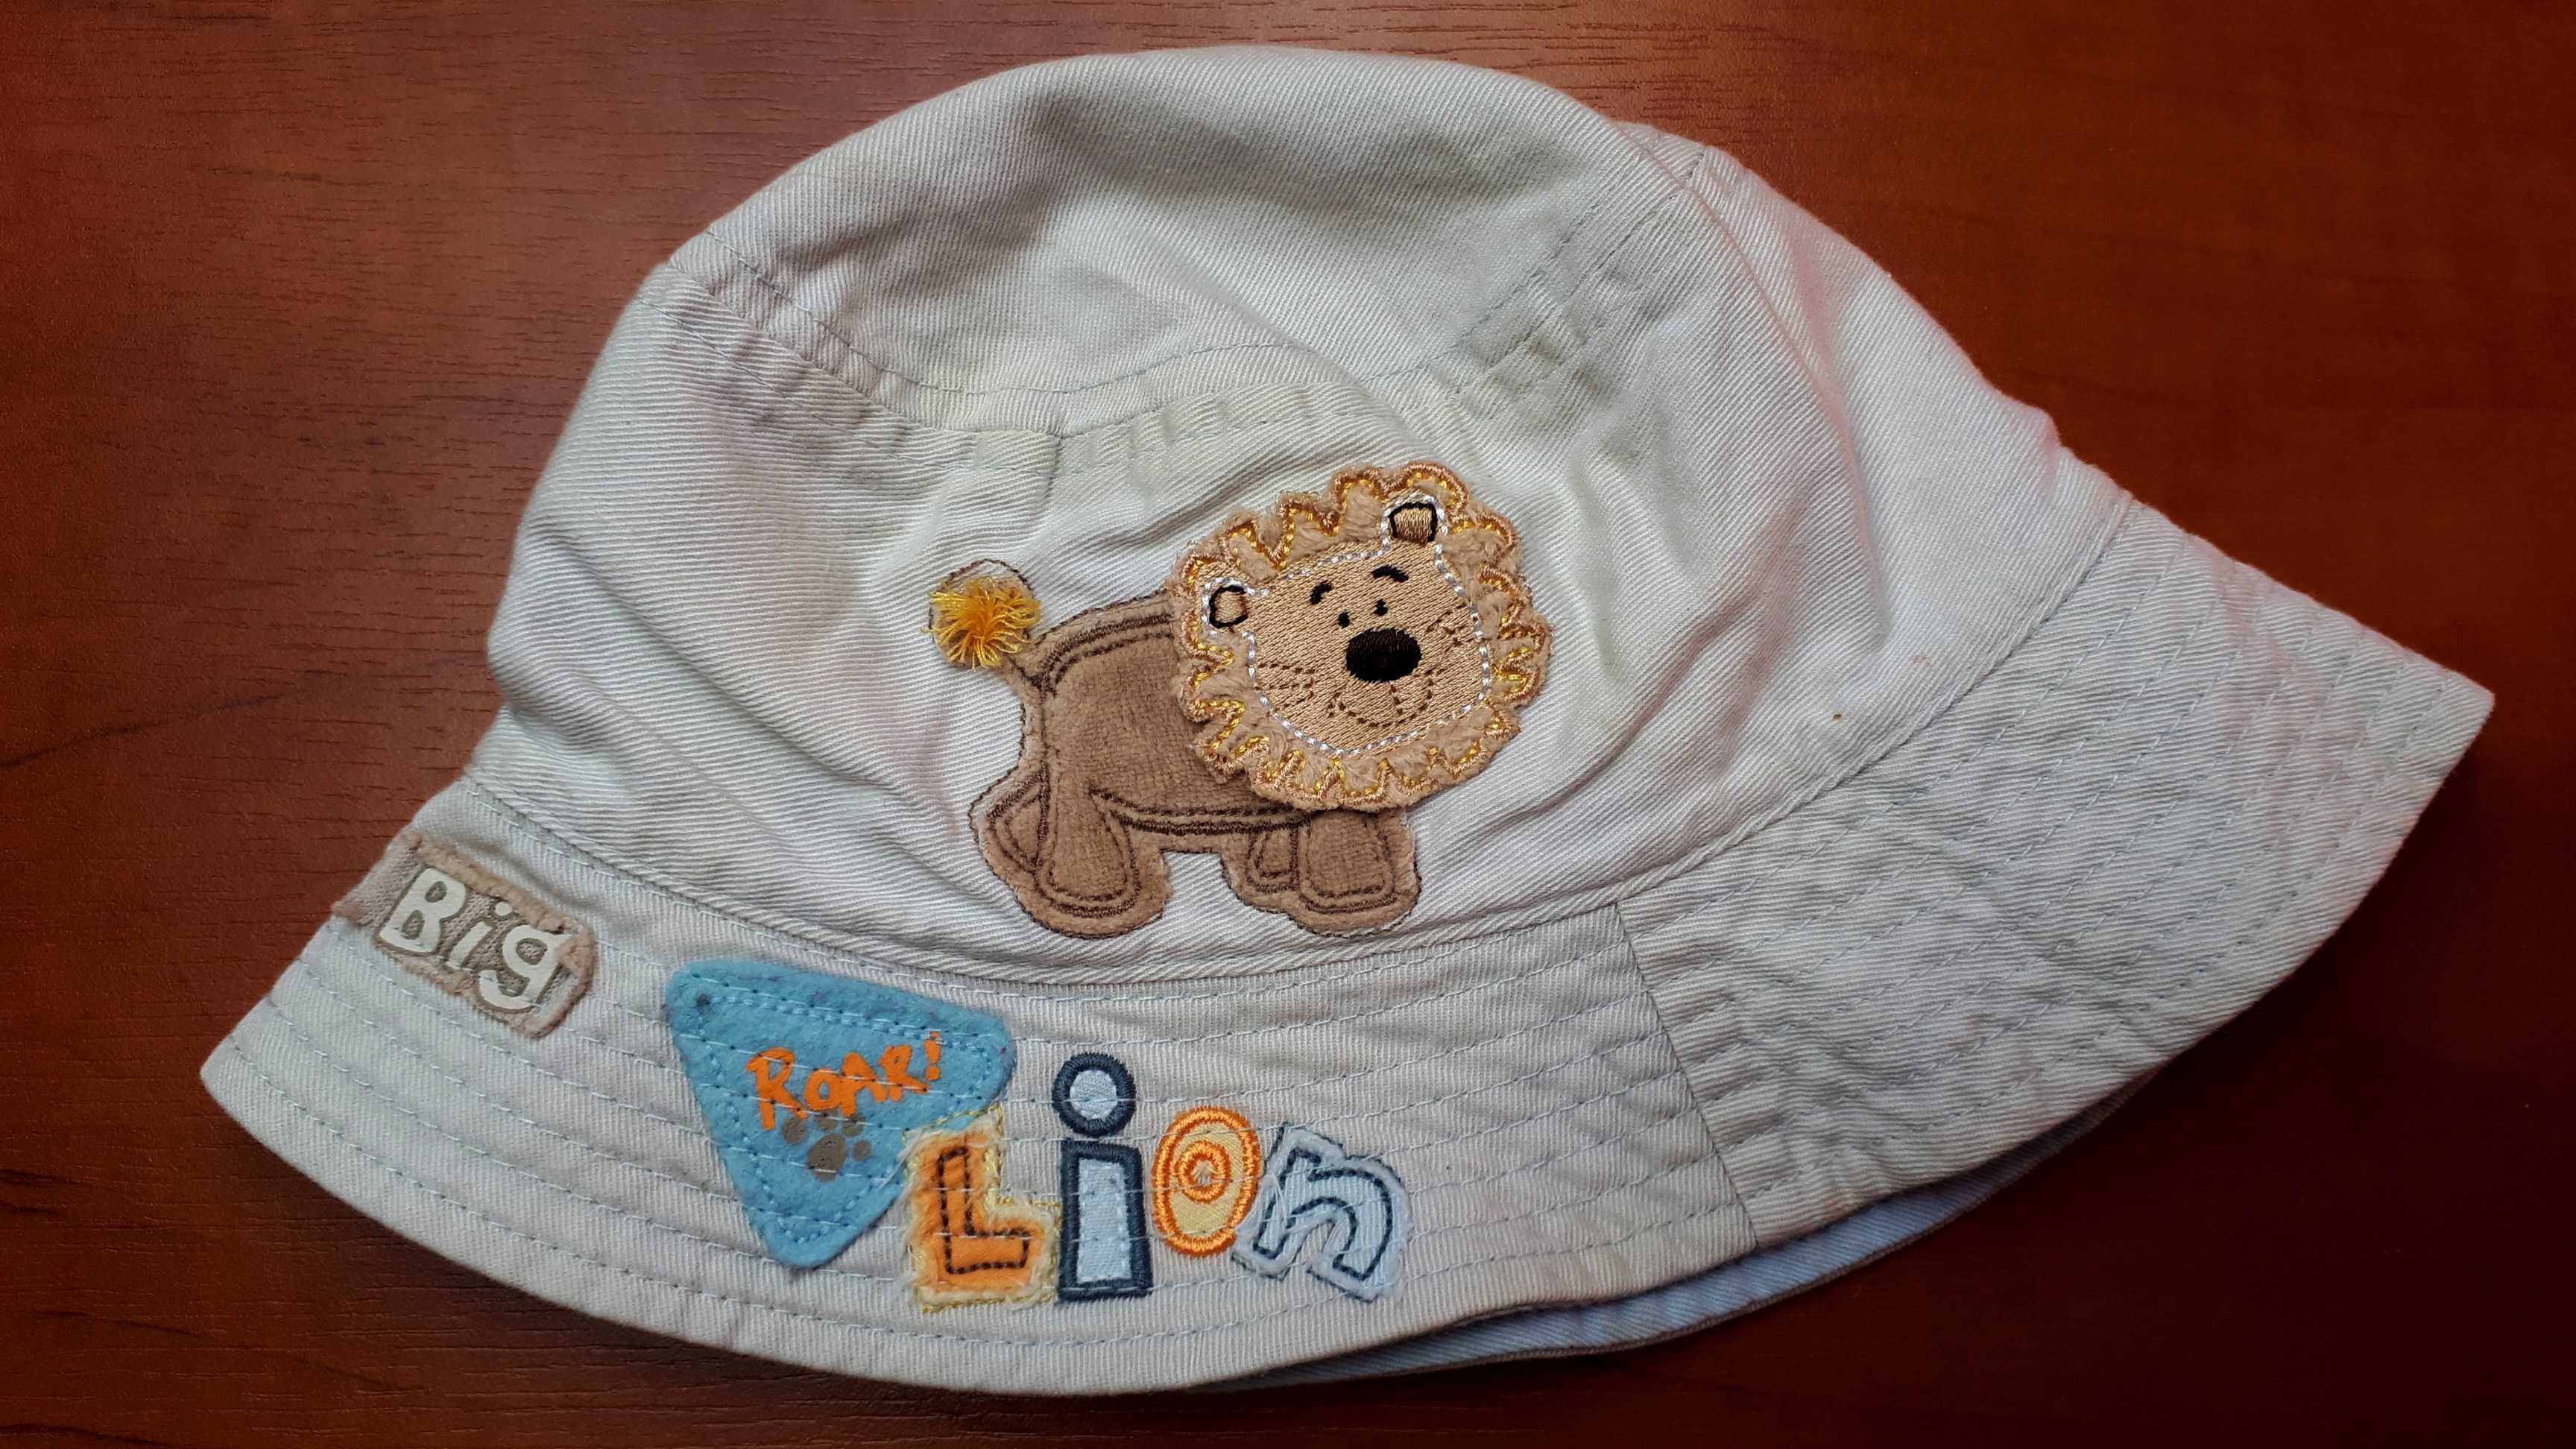 czapka- kapelusz na lato z lwem Cherokee 6-12 m-cy, obwód 46-47 cm